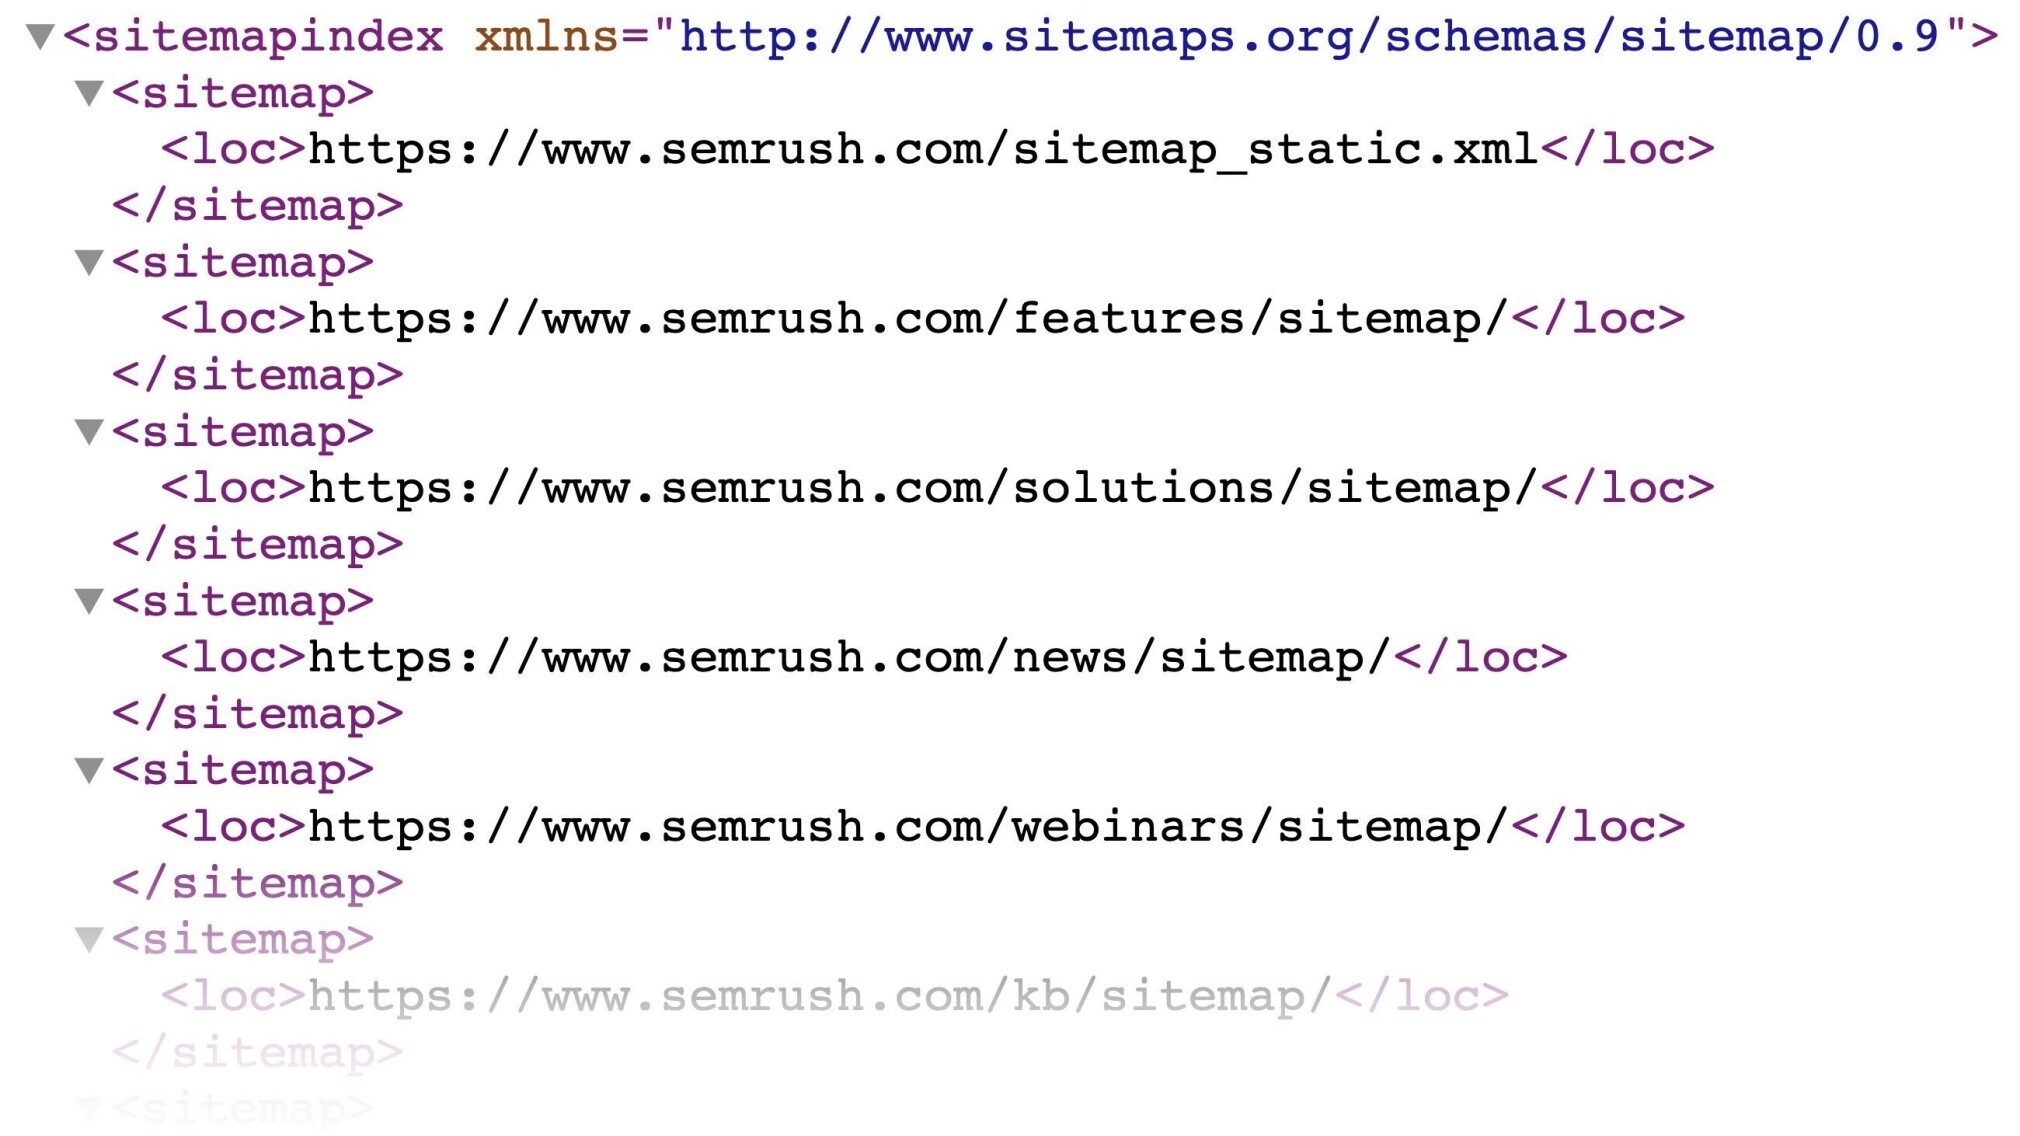 sitemap in xml format